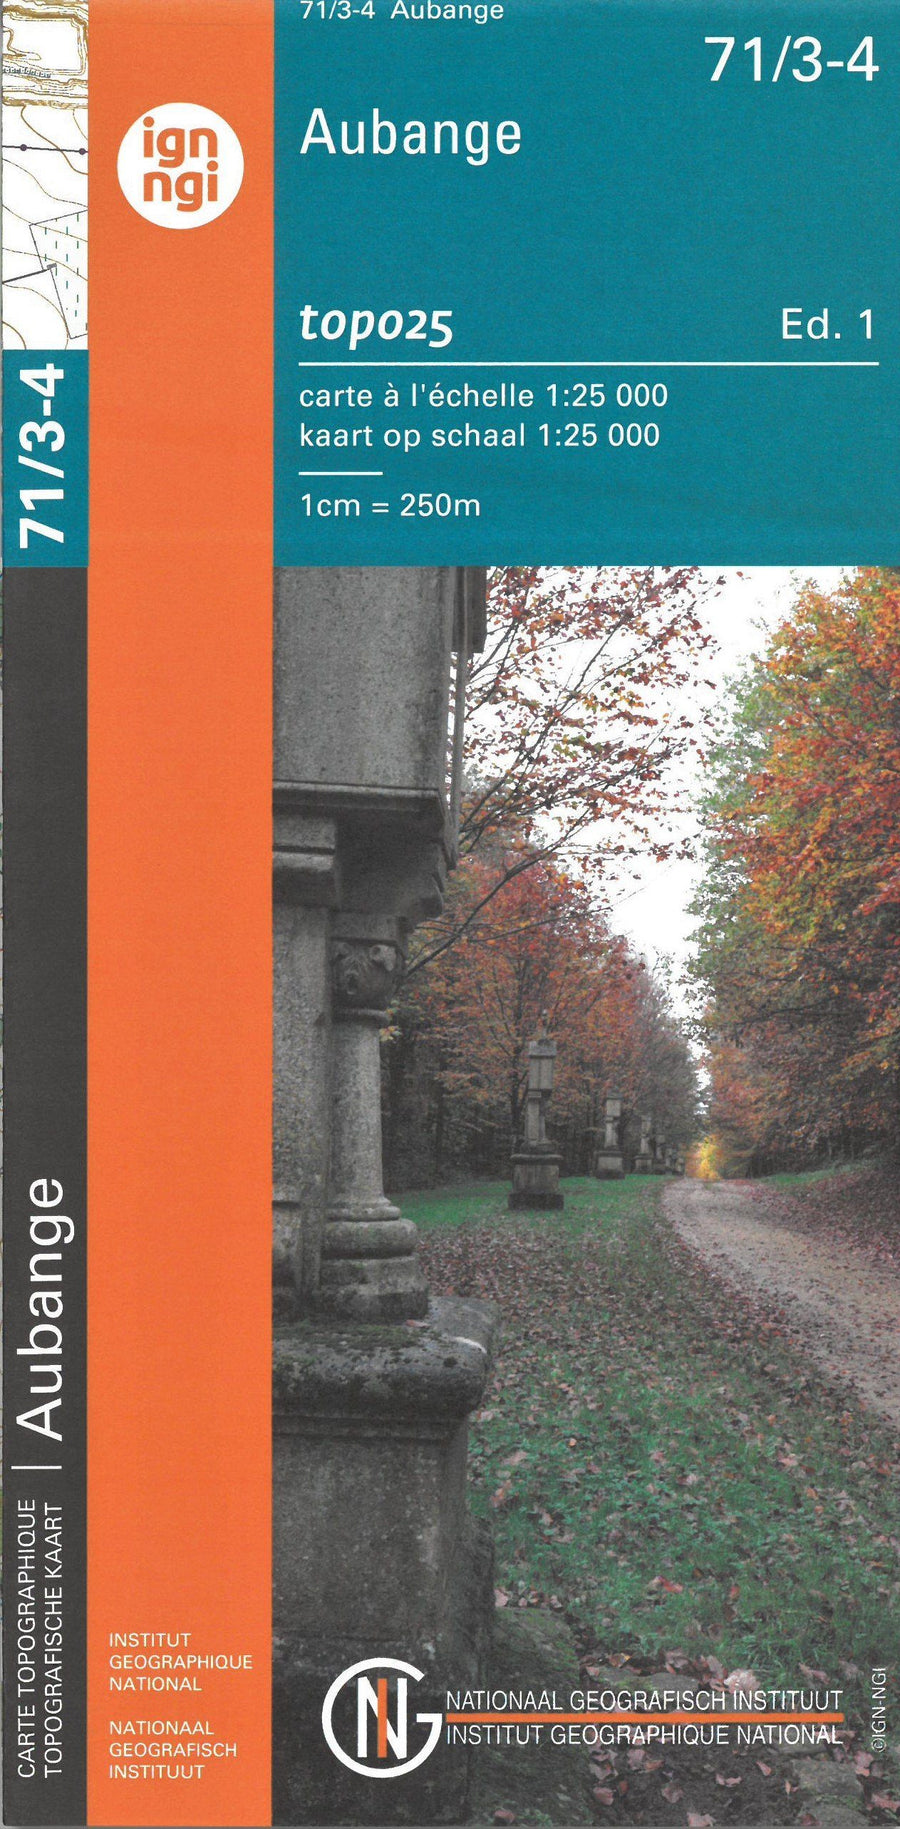 Carte topographique n° 71/3-4 - Aubange (Belgique) | NGI topo 25 carte pliée IGN Belgique 